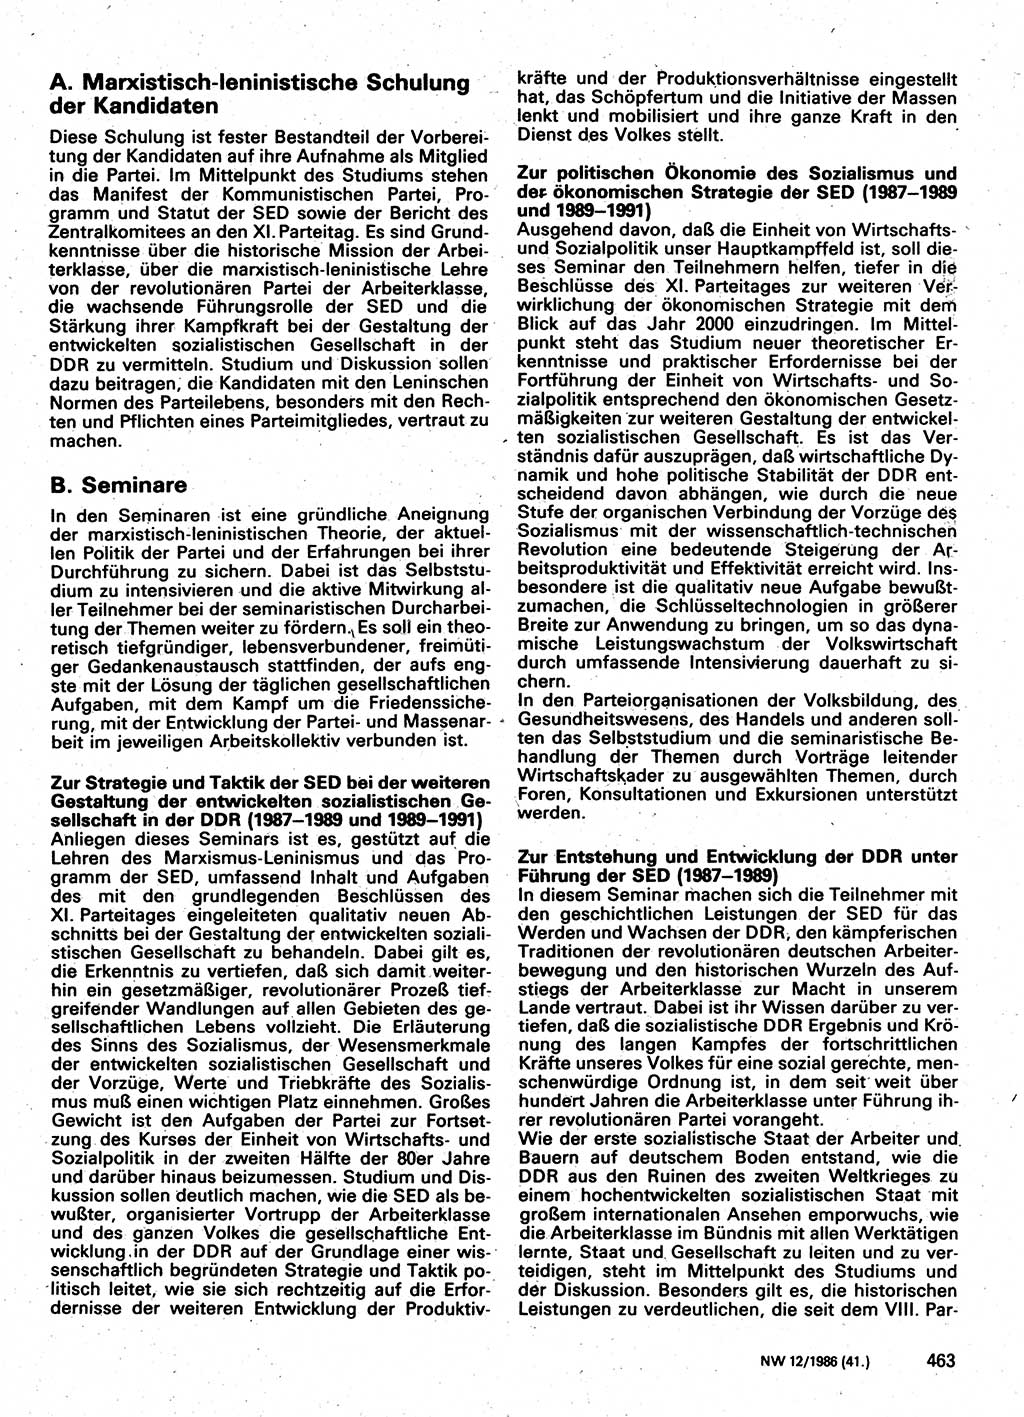 Neuer Weg (NW), Organ des Zentralkomitees (ZK) der SED (Sozialistische Einheitspartei Deutschlands) für Fragen des Parteilebens, 41. Jahrgang [Deutsche Demokratische Republik (DDR)] 1986, Seite 463 (NW ZK SED DDR 1986, S. 463)